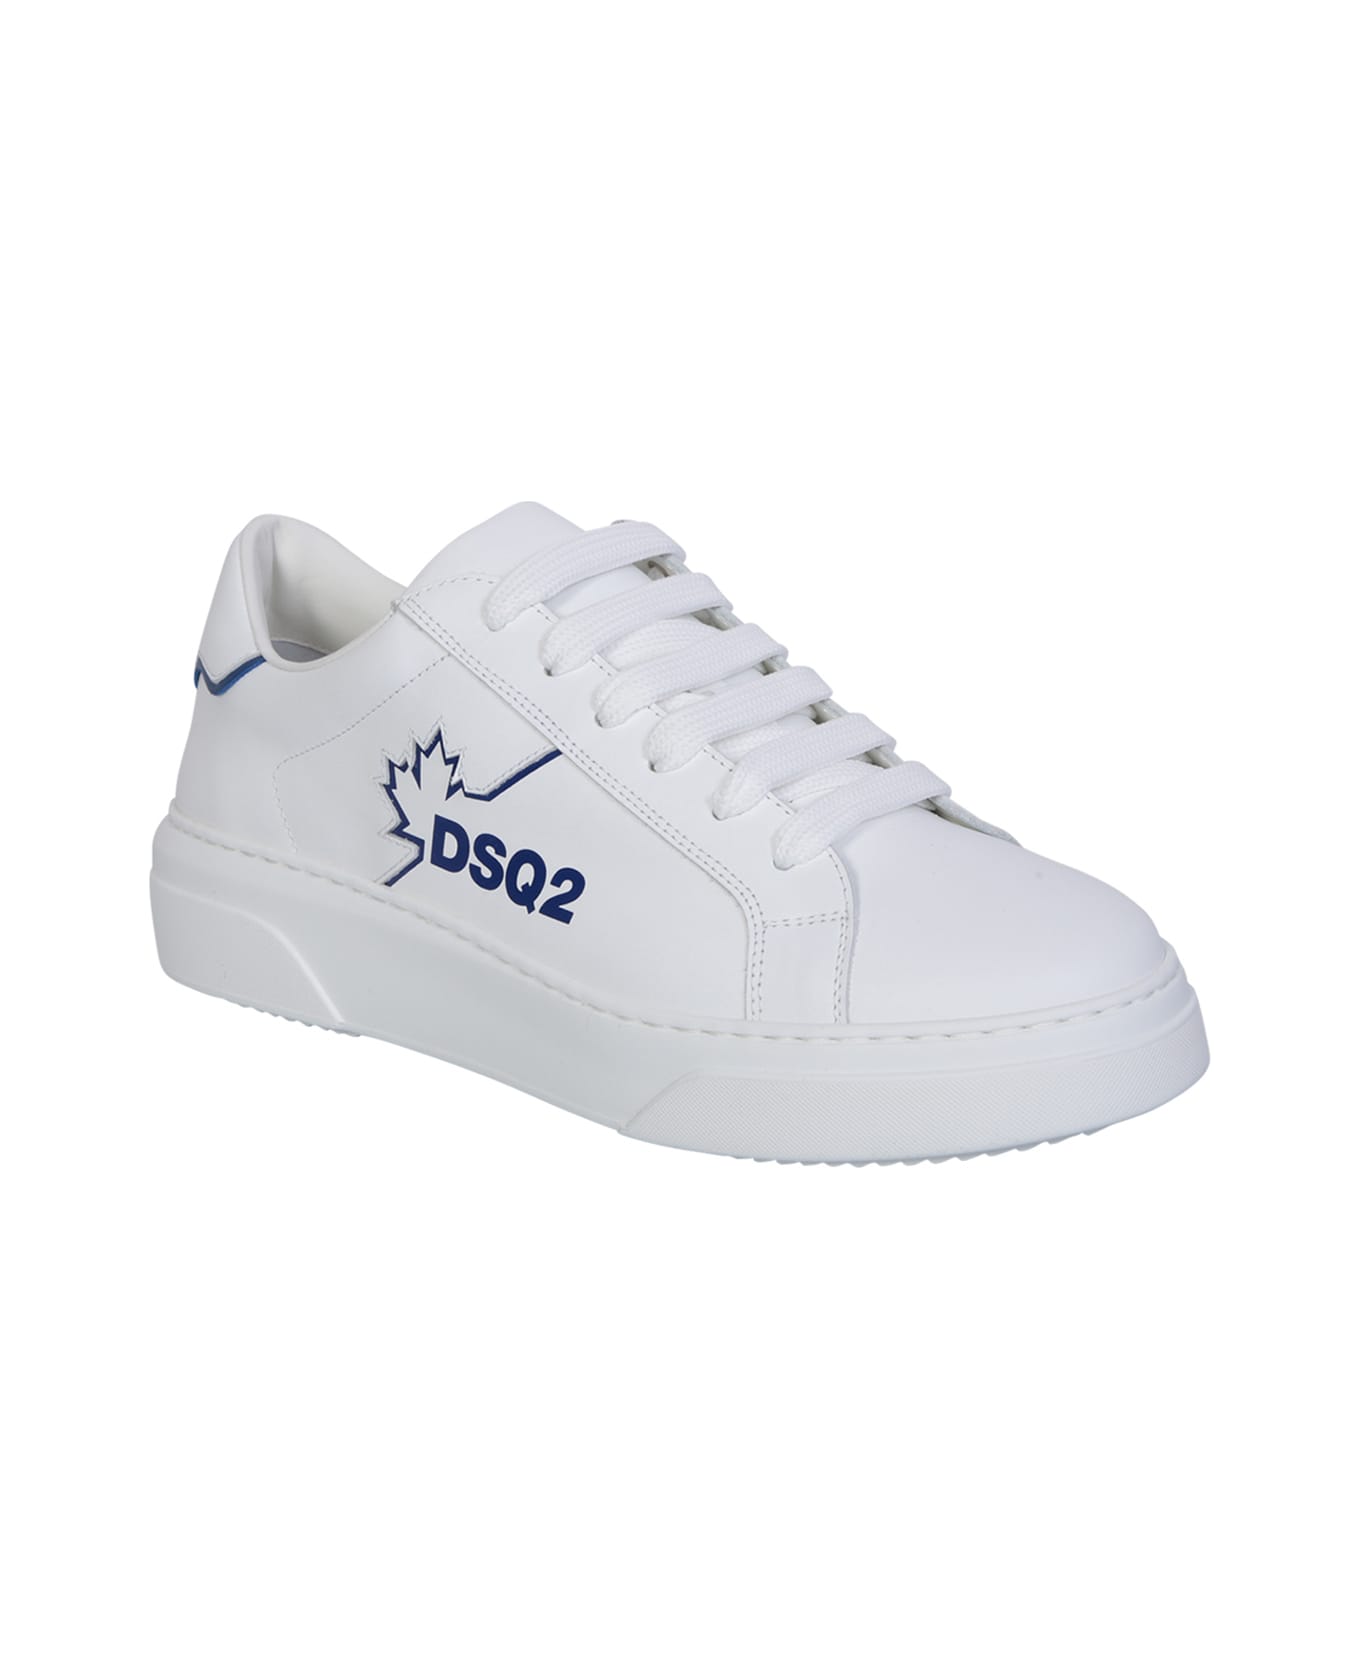 Dsquared2 Bumper White/blue Sneakers - White